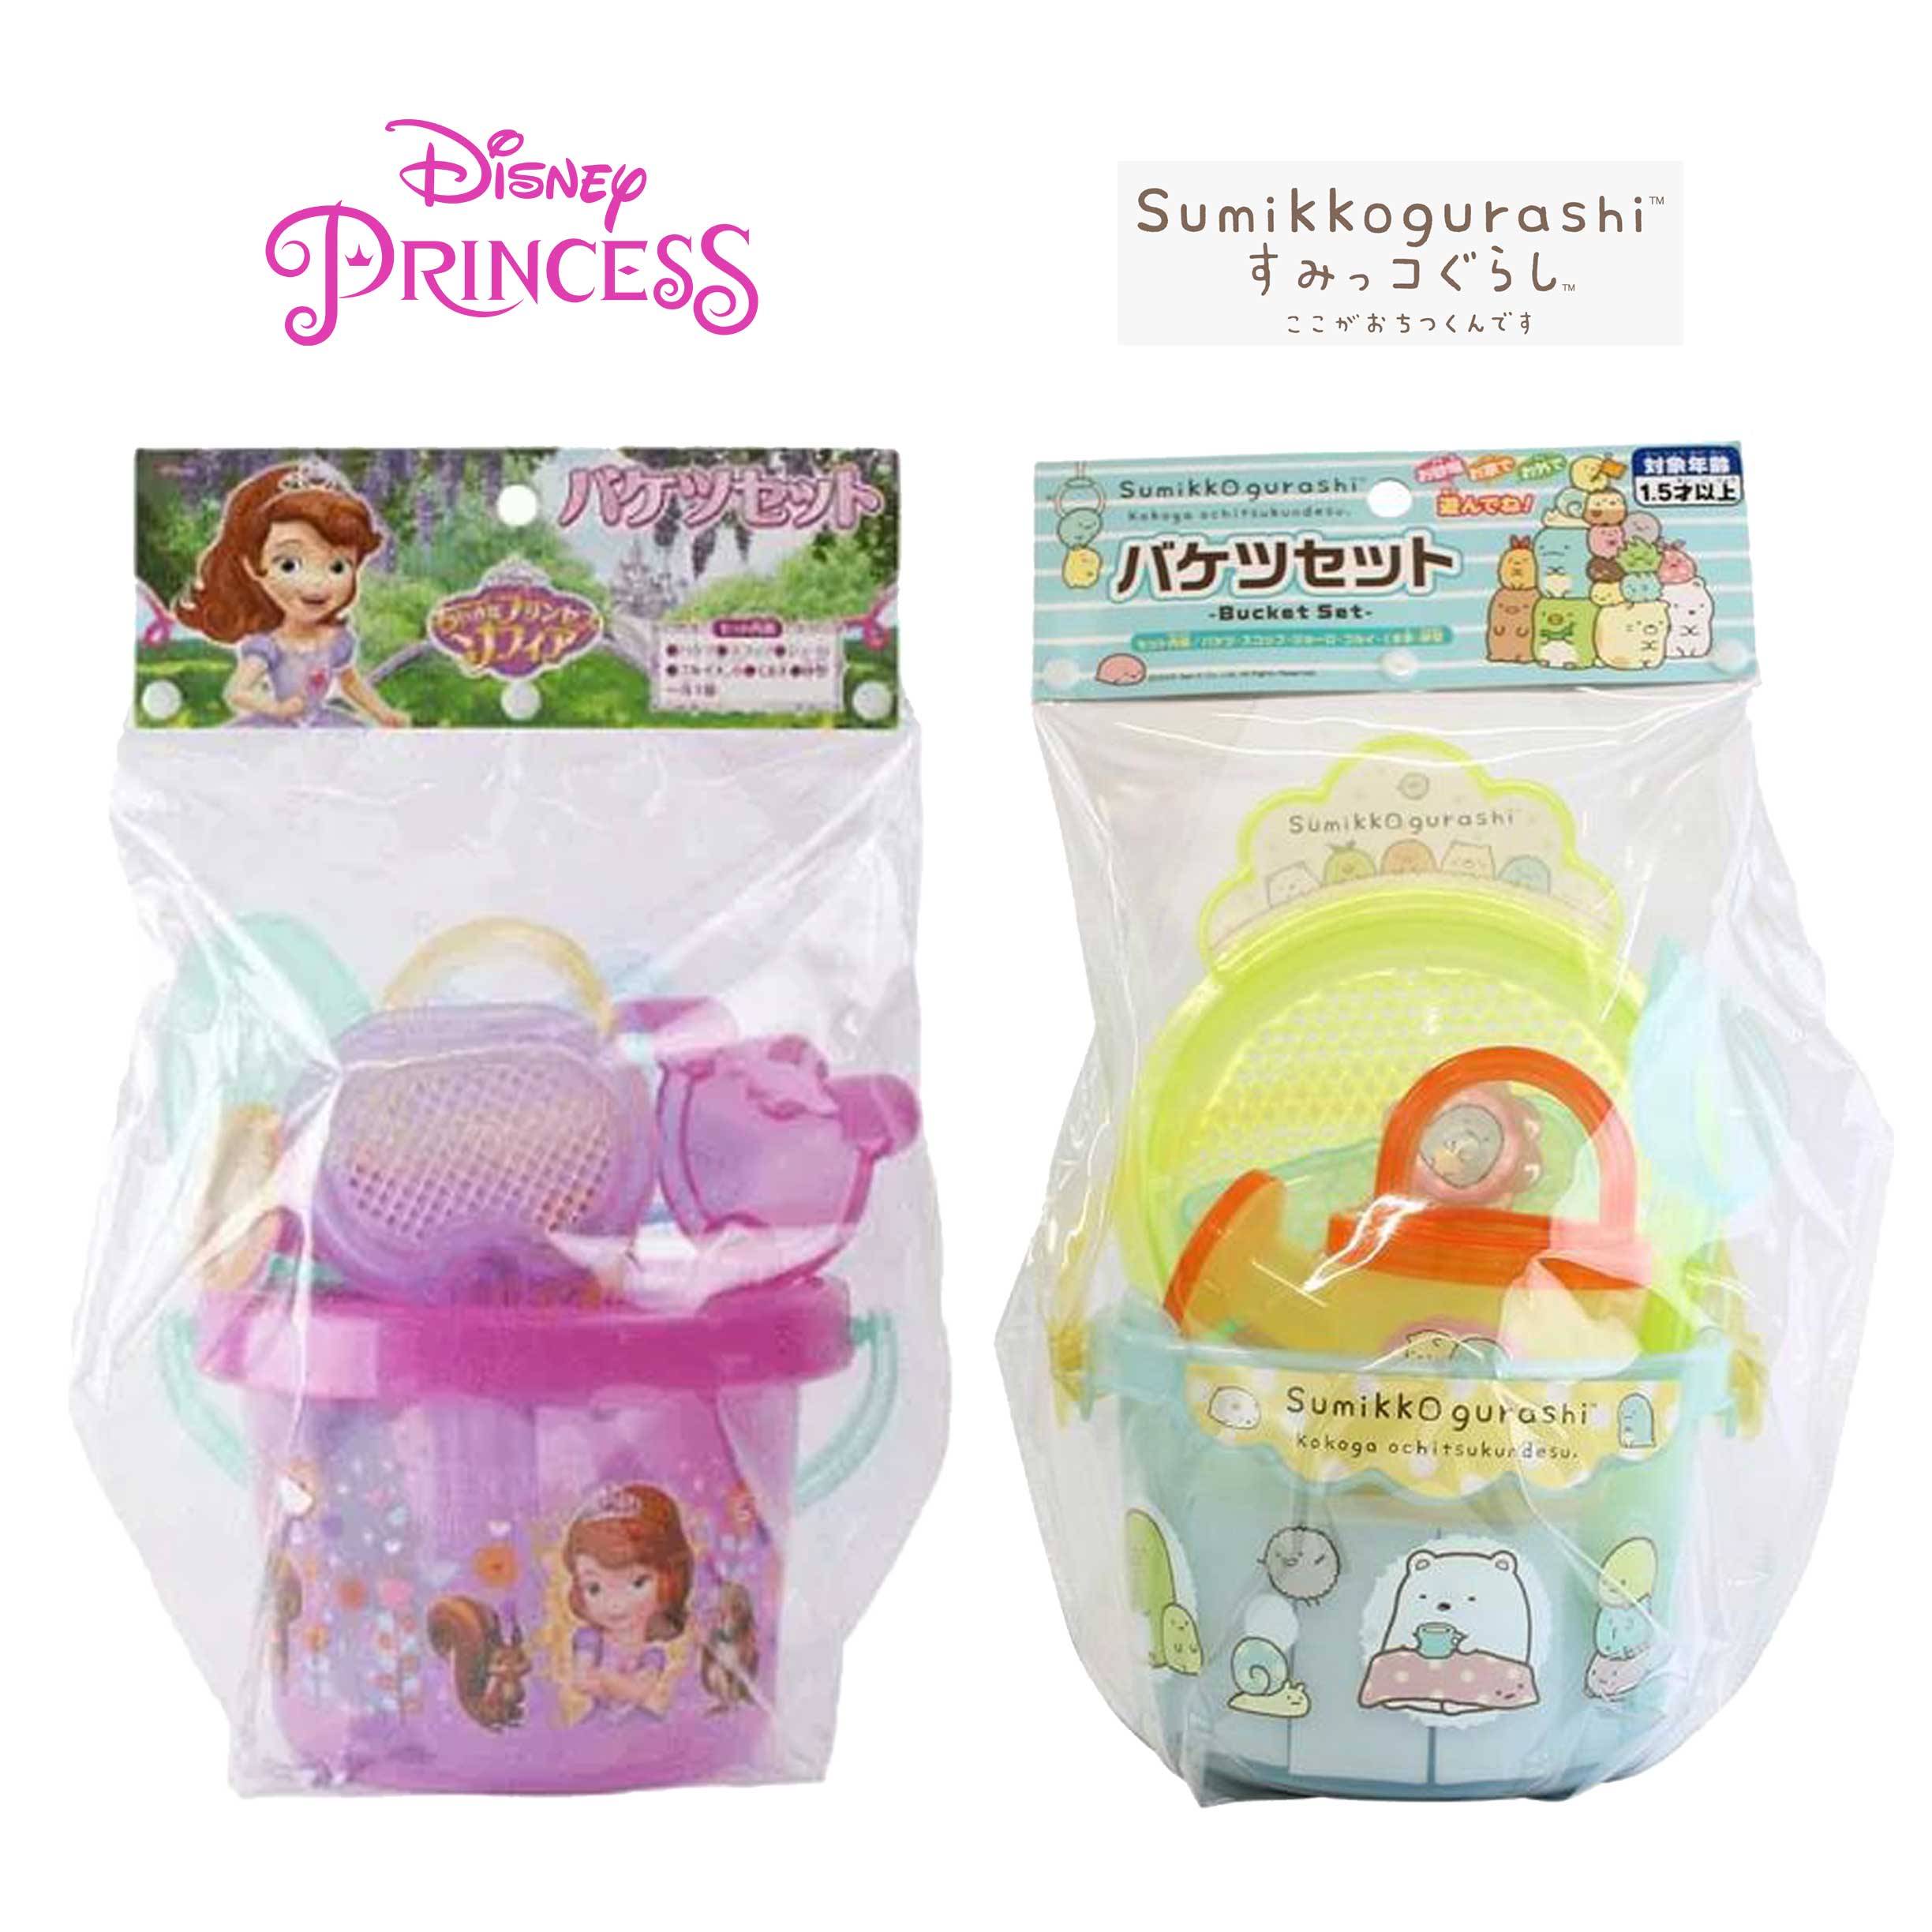 手提挖沙玩具組-角落生物 小公主蘇菲亞 日本進口正版授權